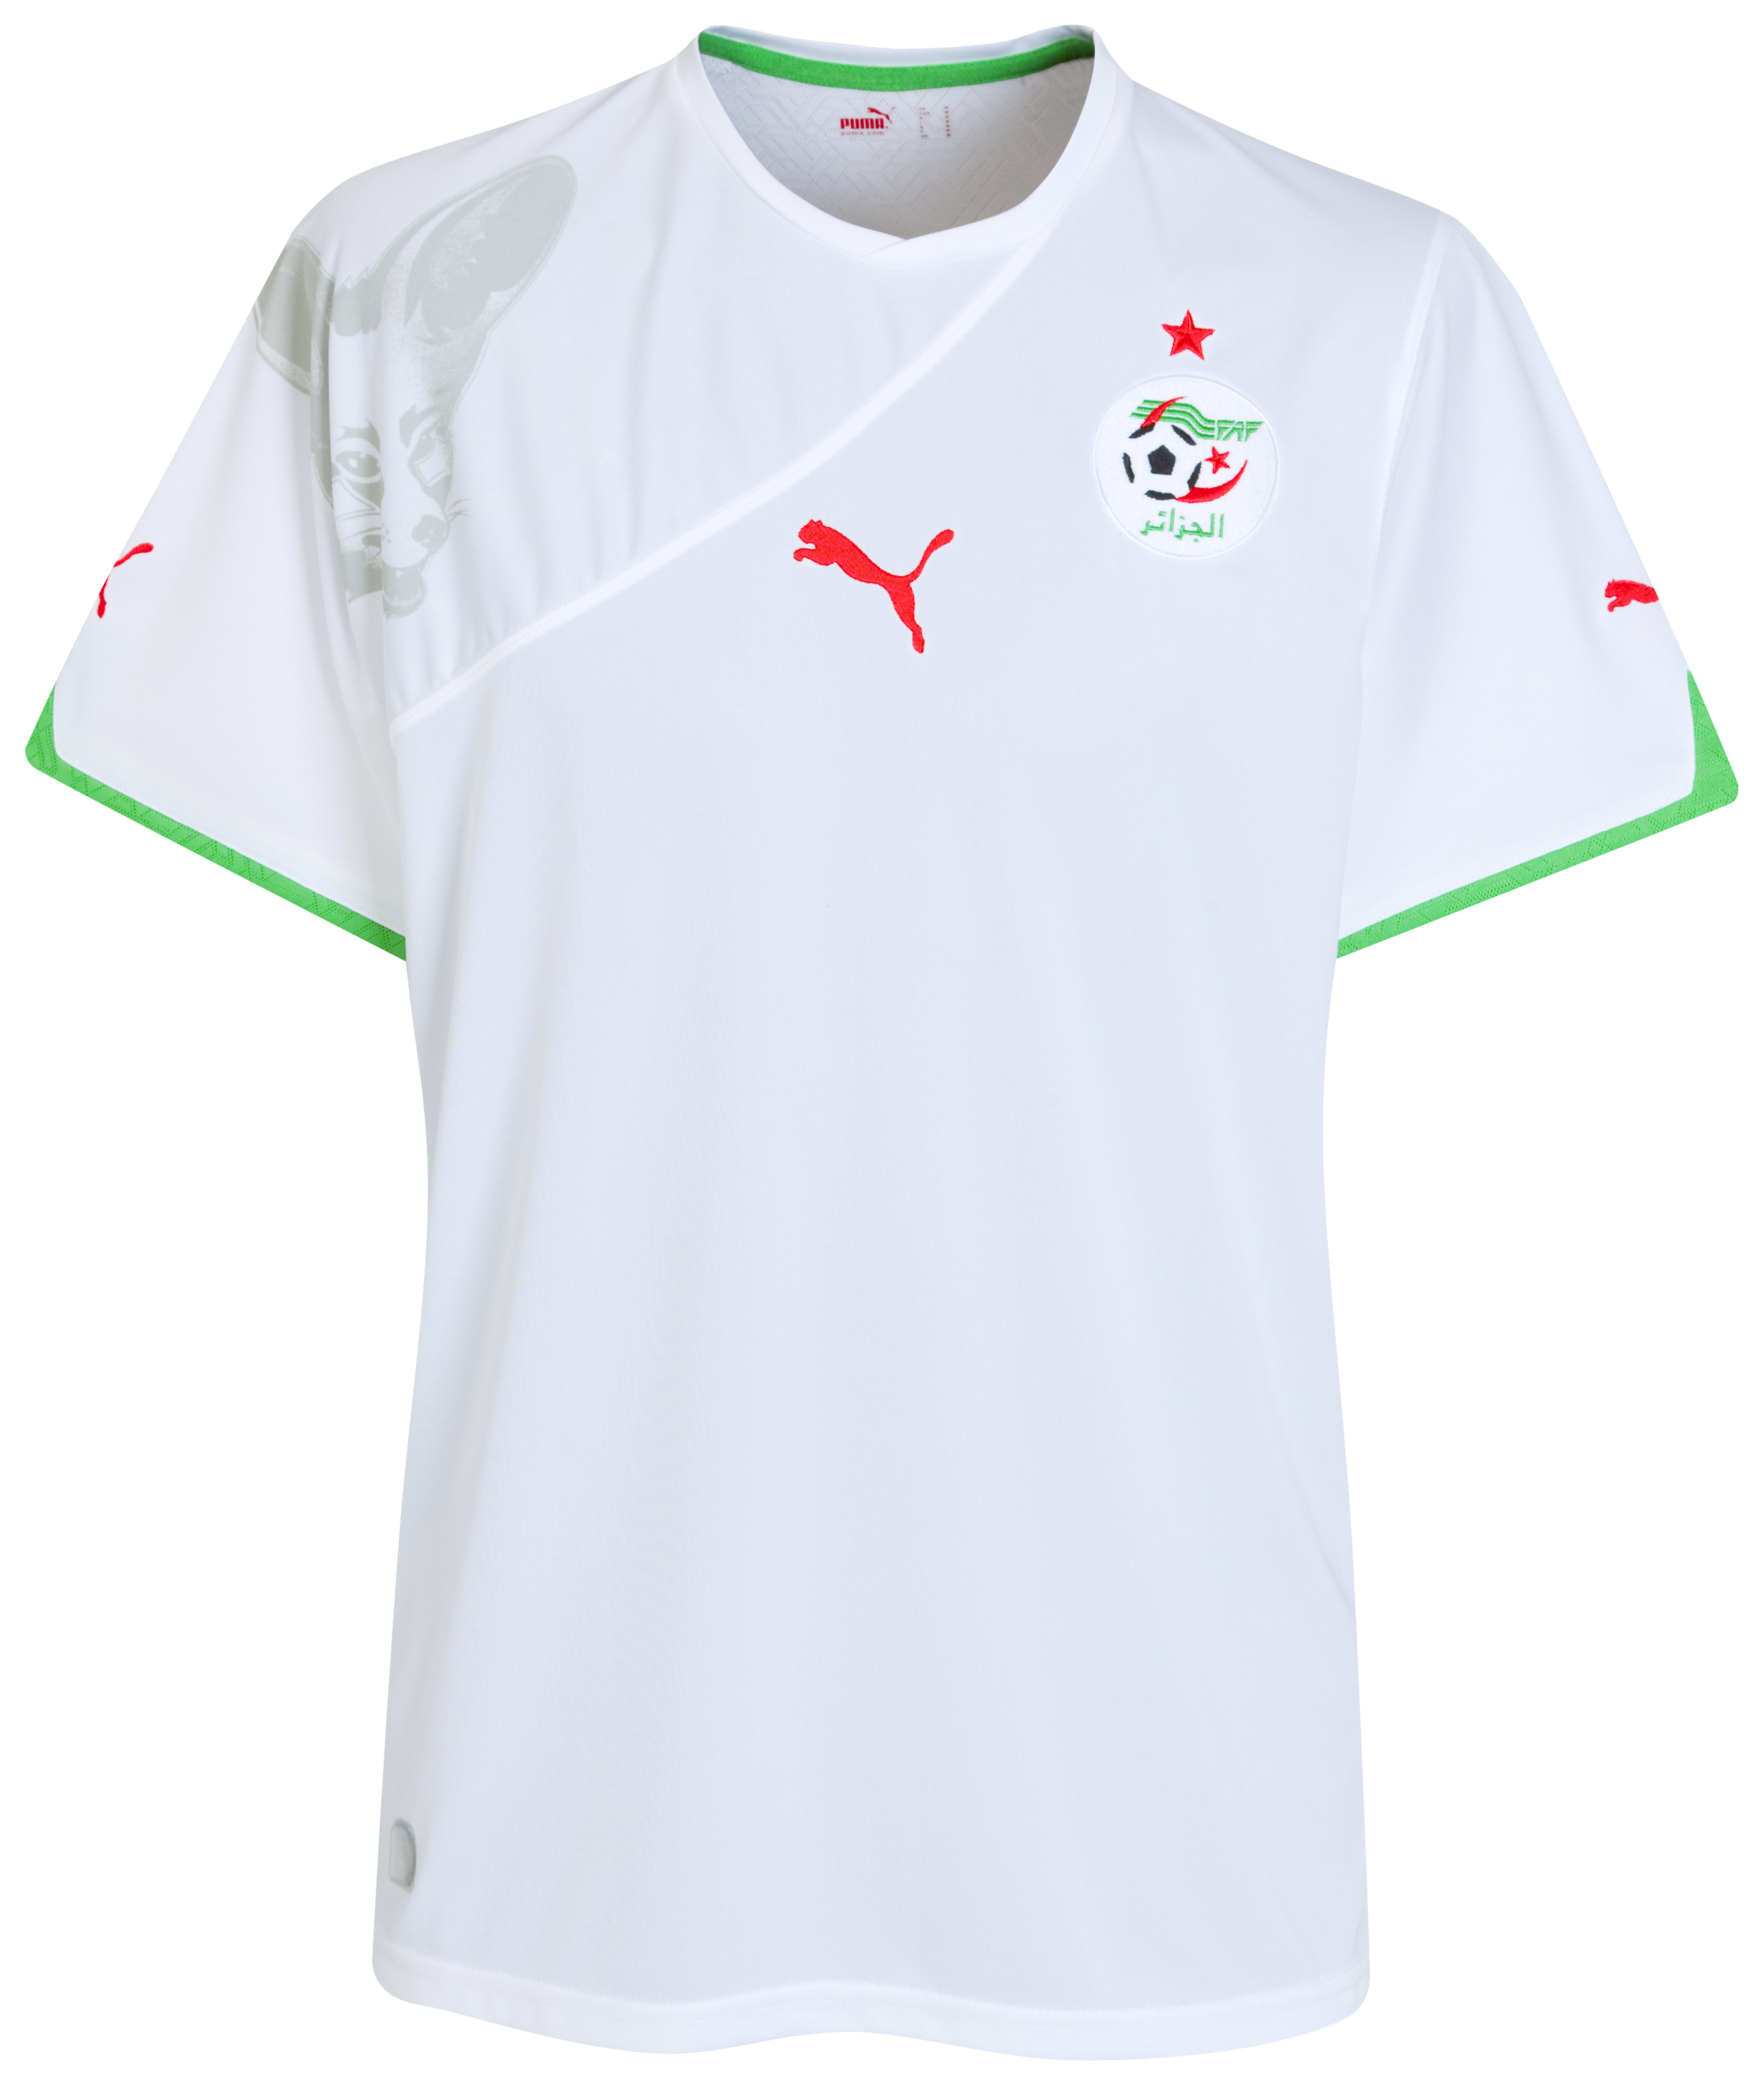 ملابس المنتخبات لكأس العالم2010م Kb-70198